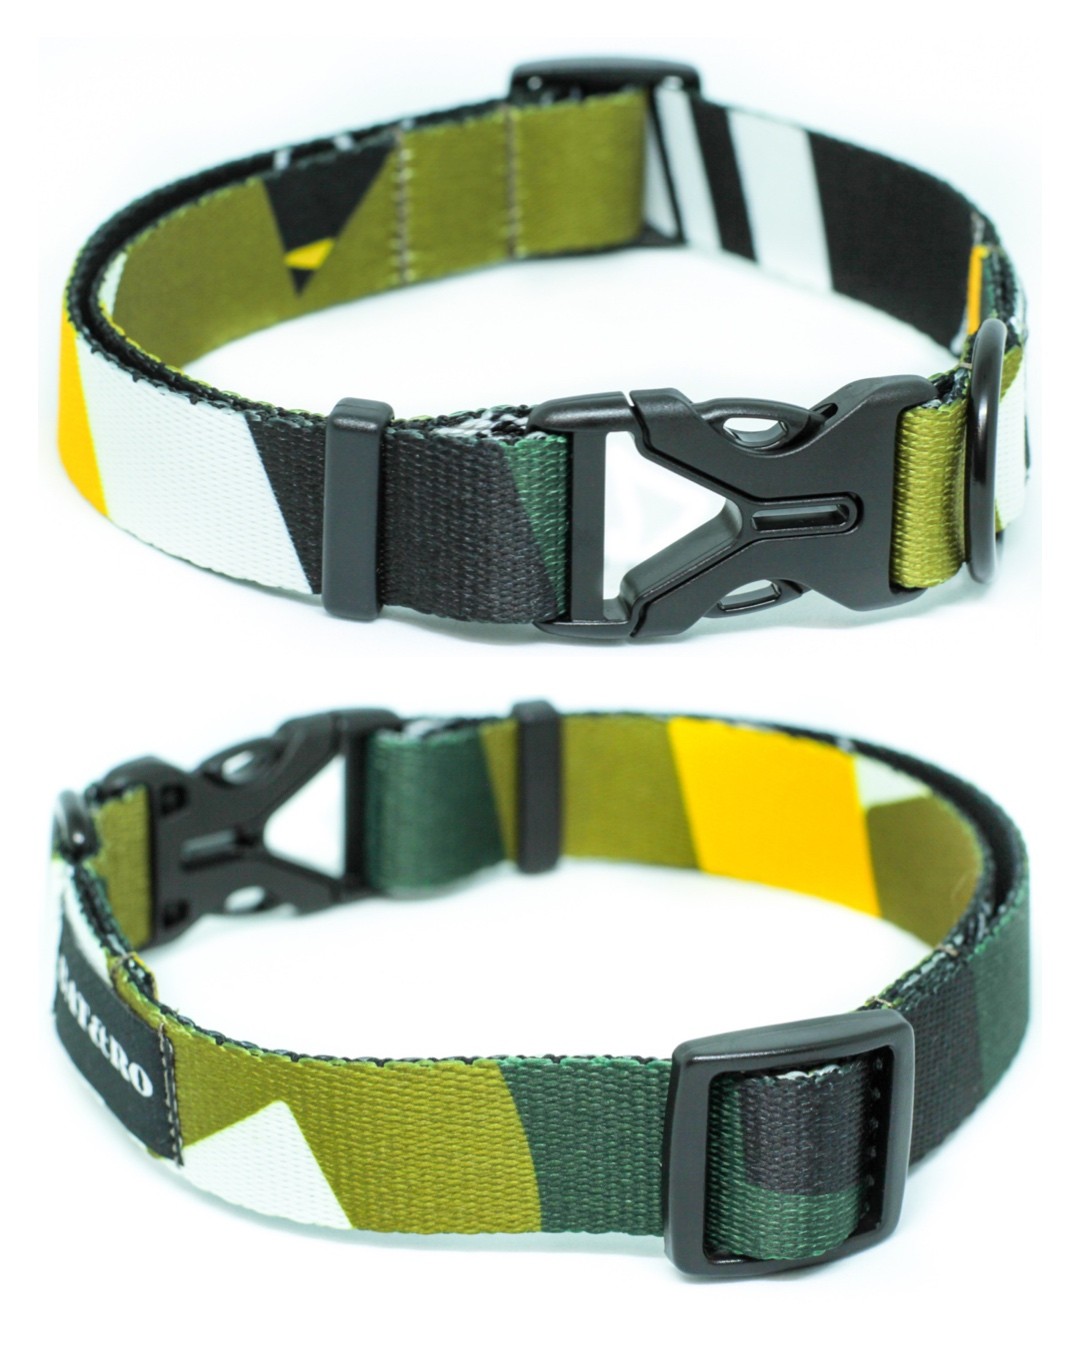 Dog collar nylon BAT&RO "Gangsta" S (30-40cm)